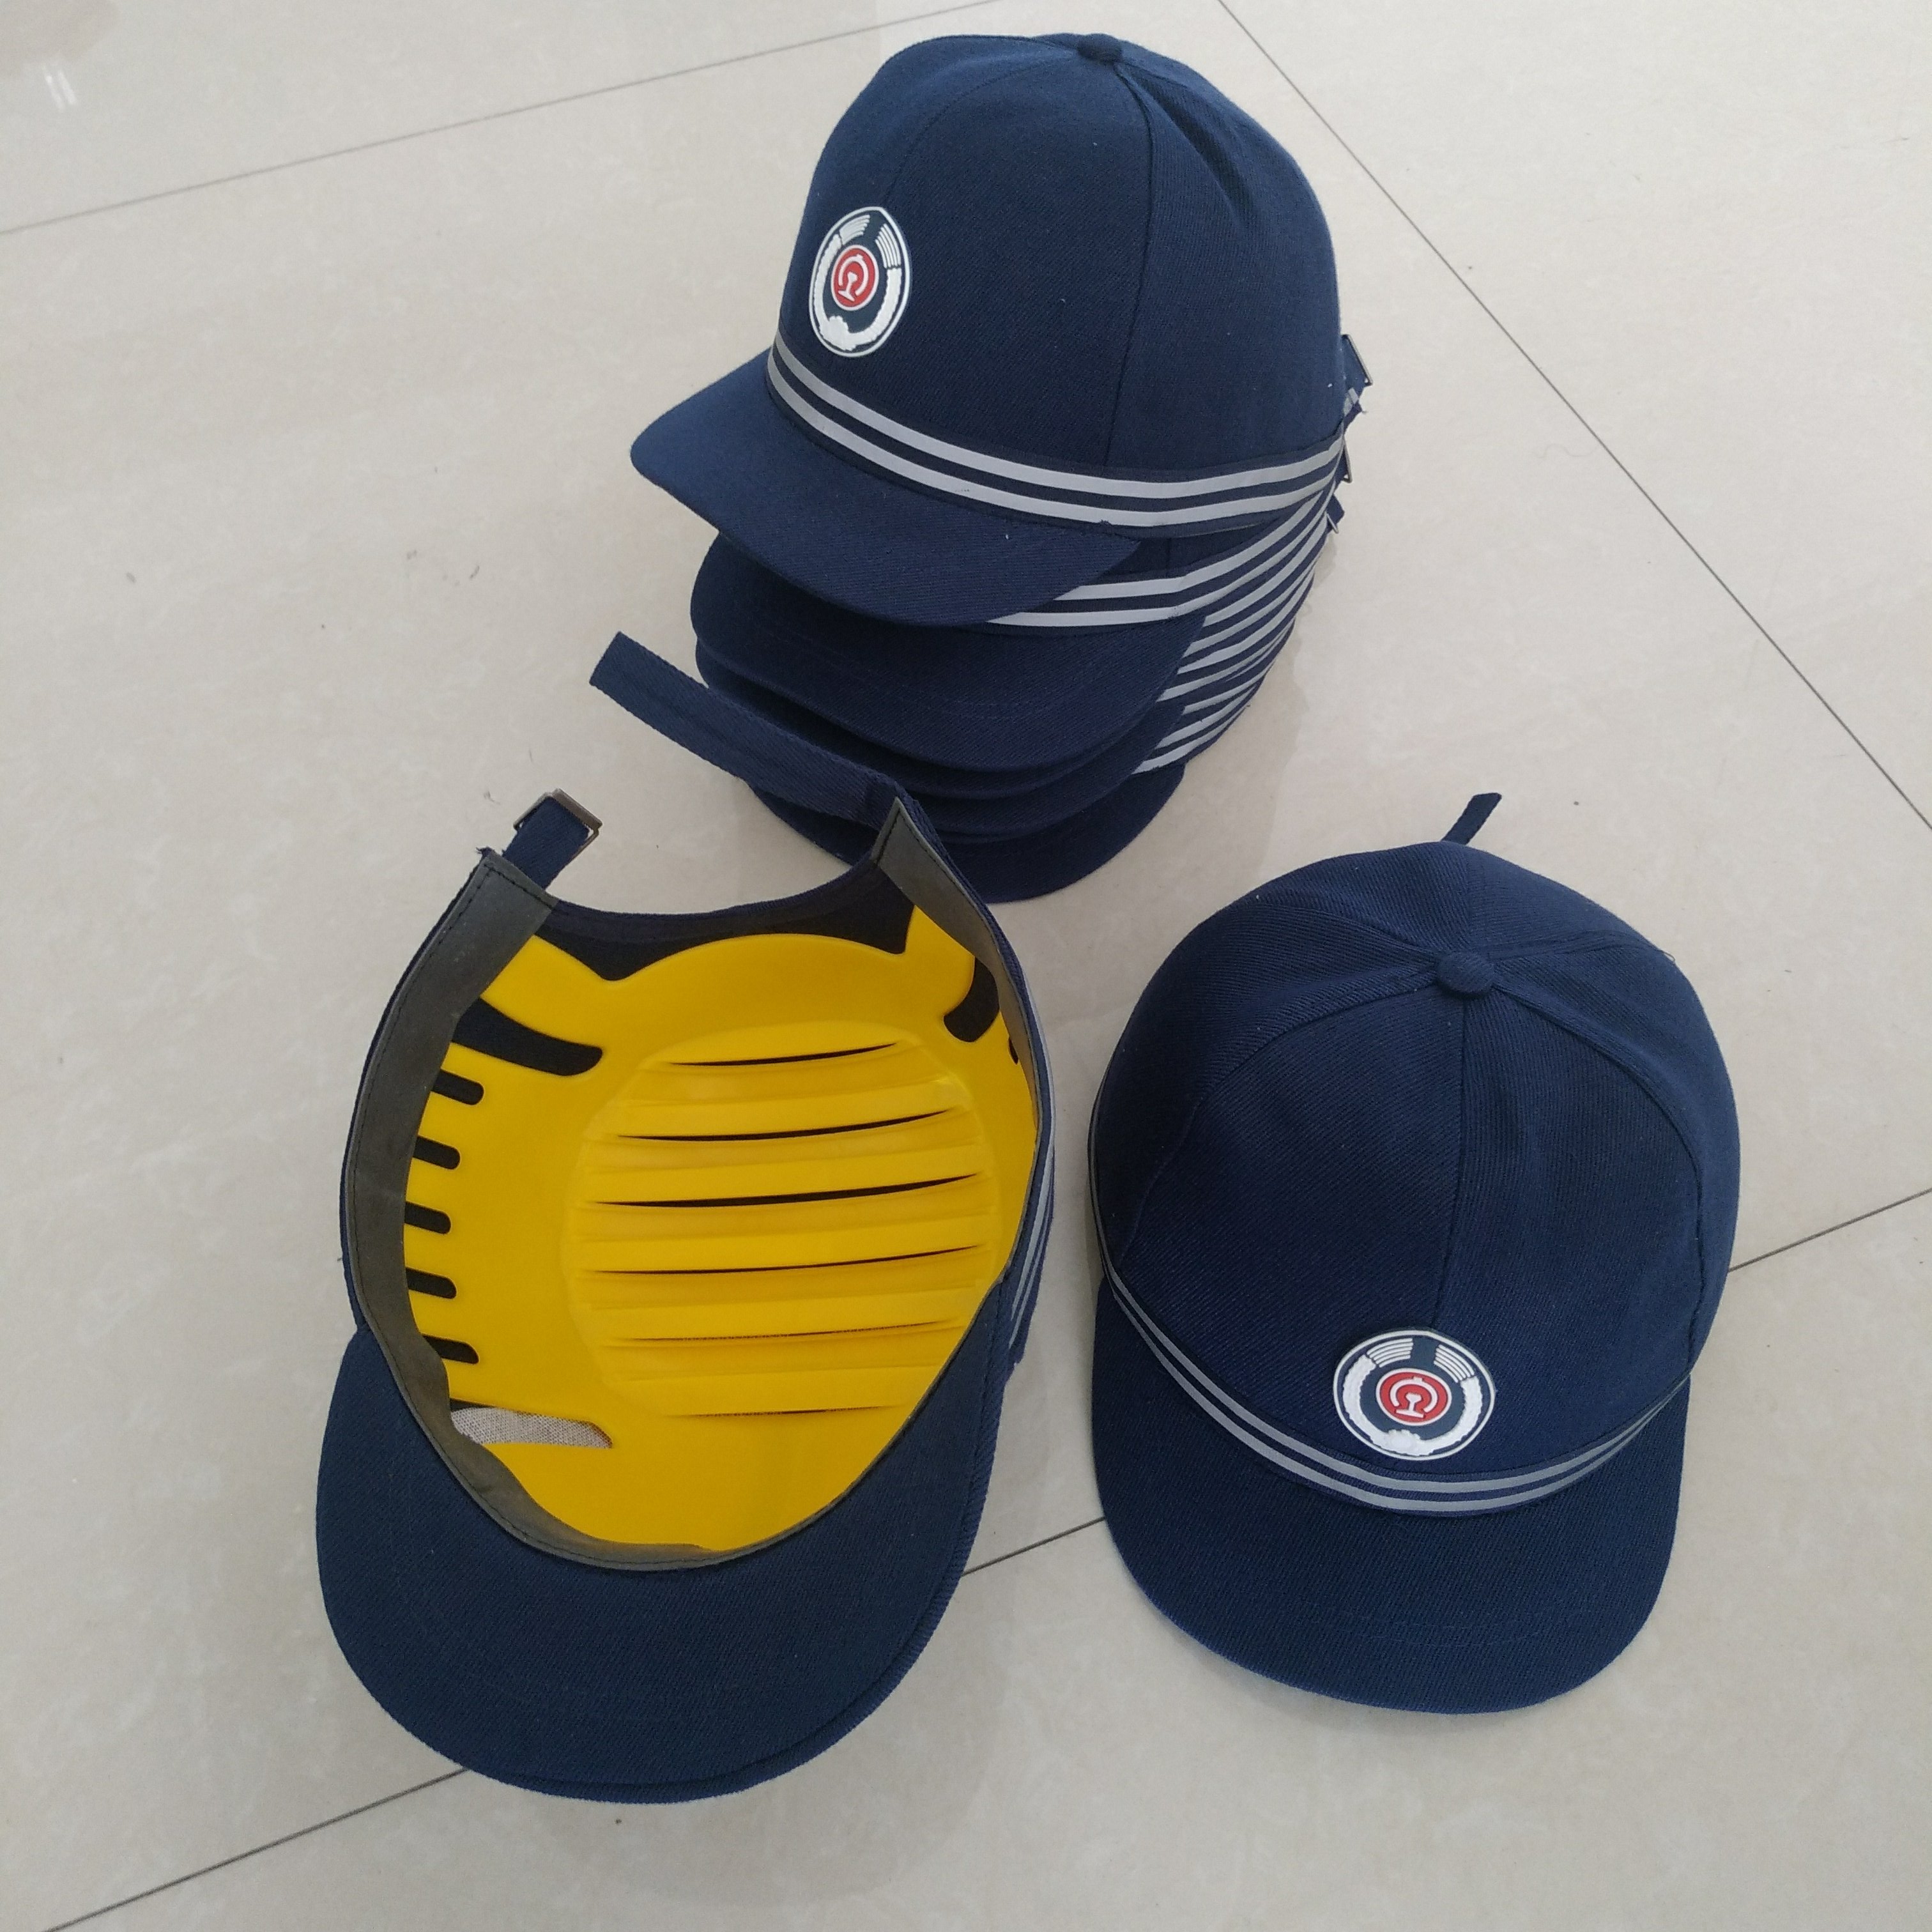 铁路专用安全帽 铁路安全防护帽 蓝黄红 轻便型带反光条图片